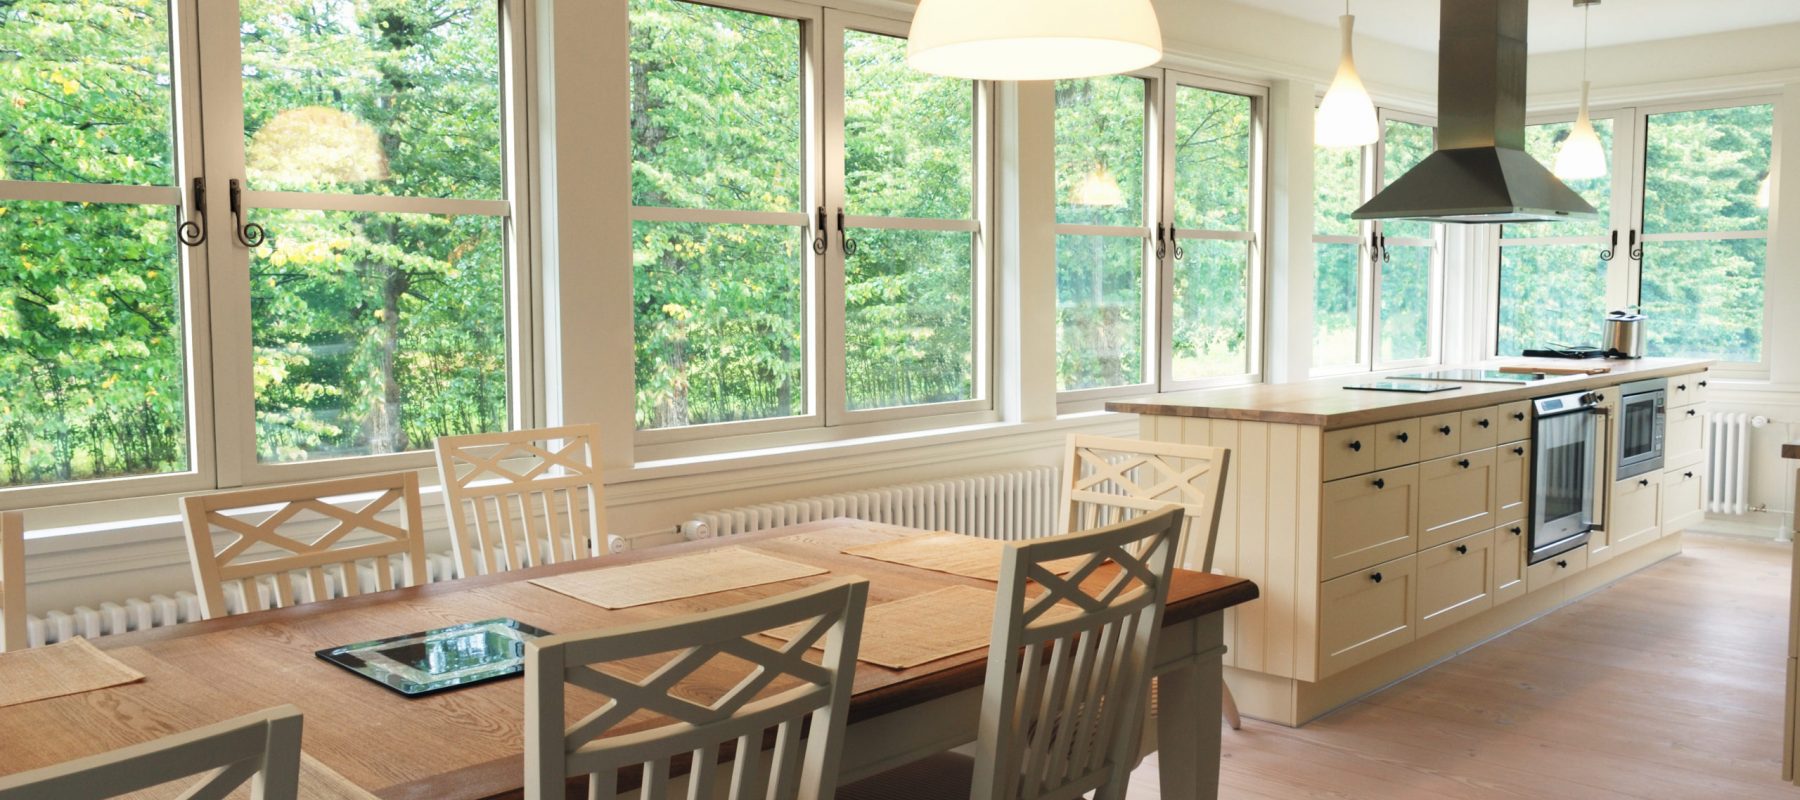 light kitchen interior,  chairs, desk, windows